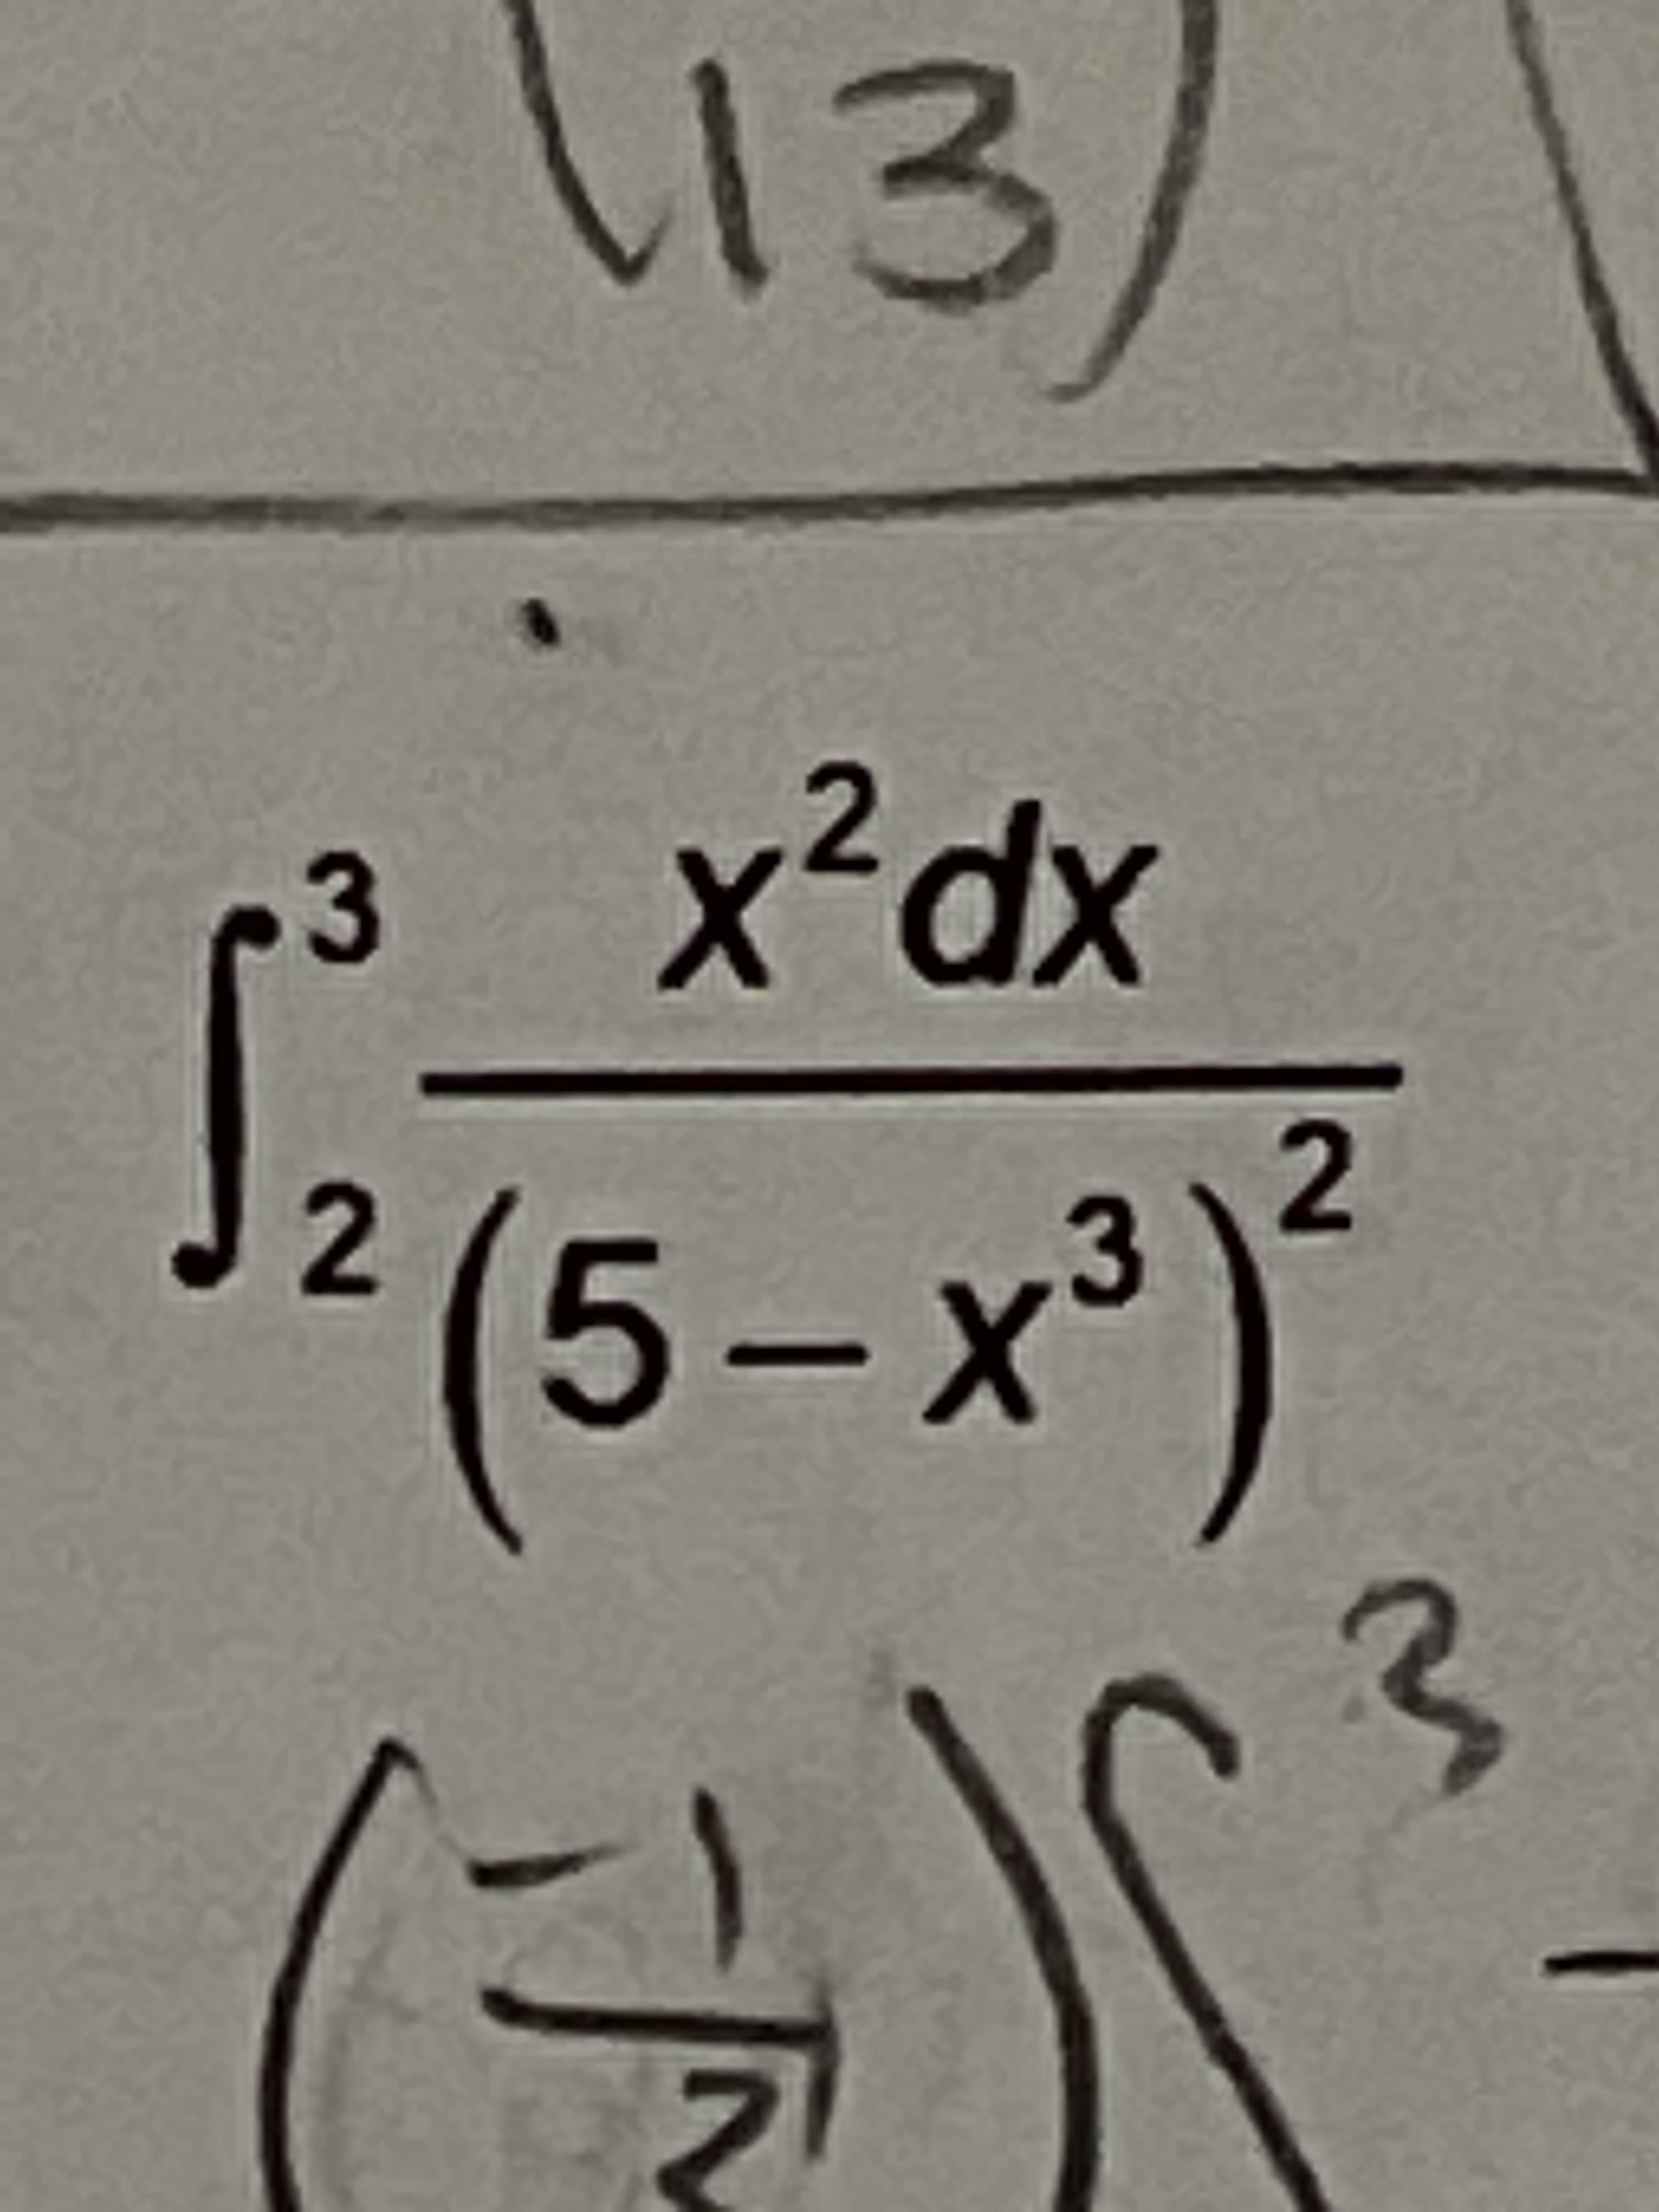 x²dx
3
2
3
(5-x')
2.
